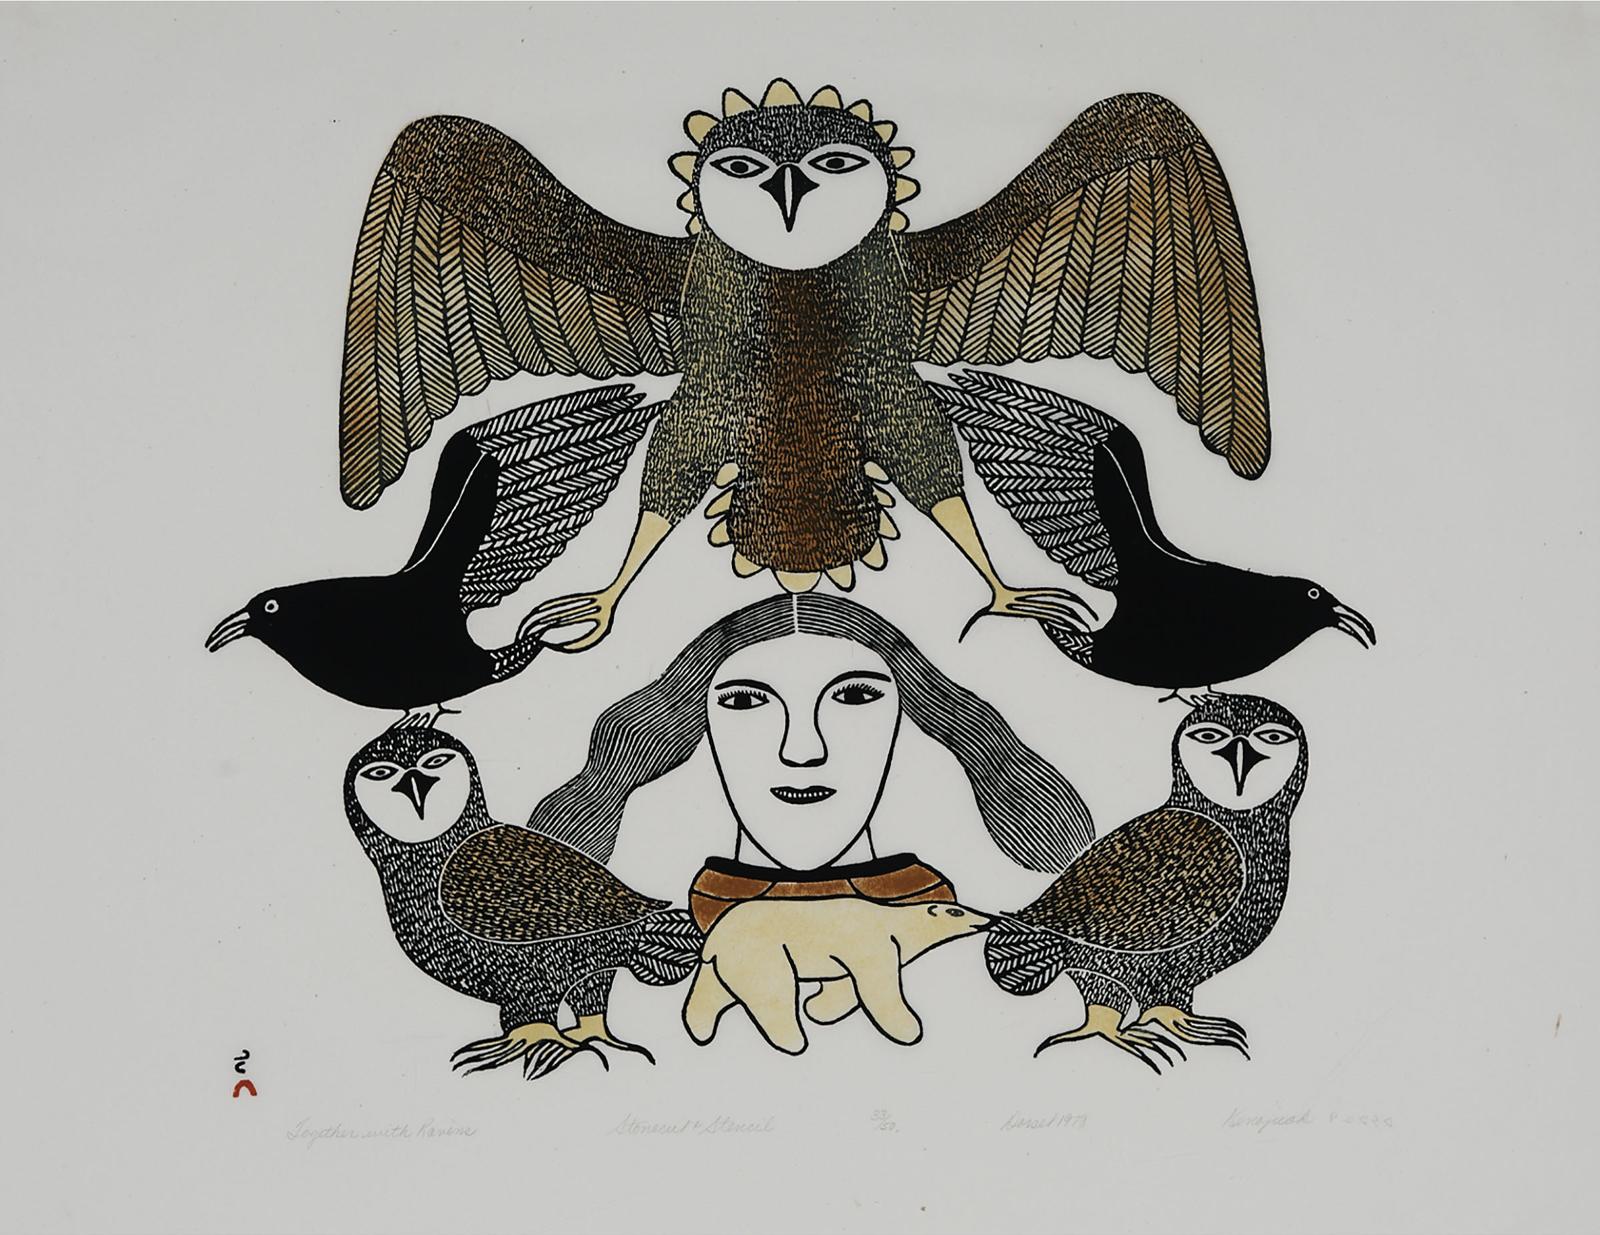 Kenojuak Ashevak (1927-2013) - Together With Ravens